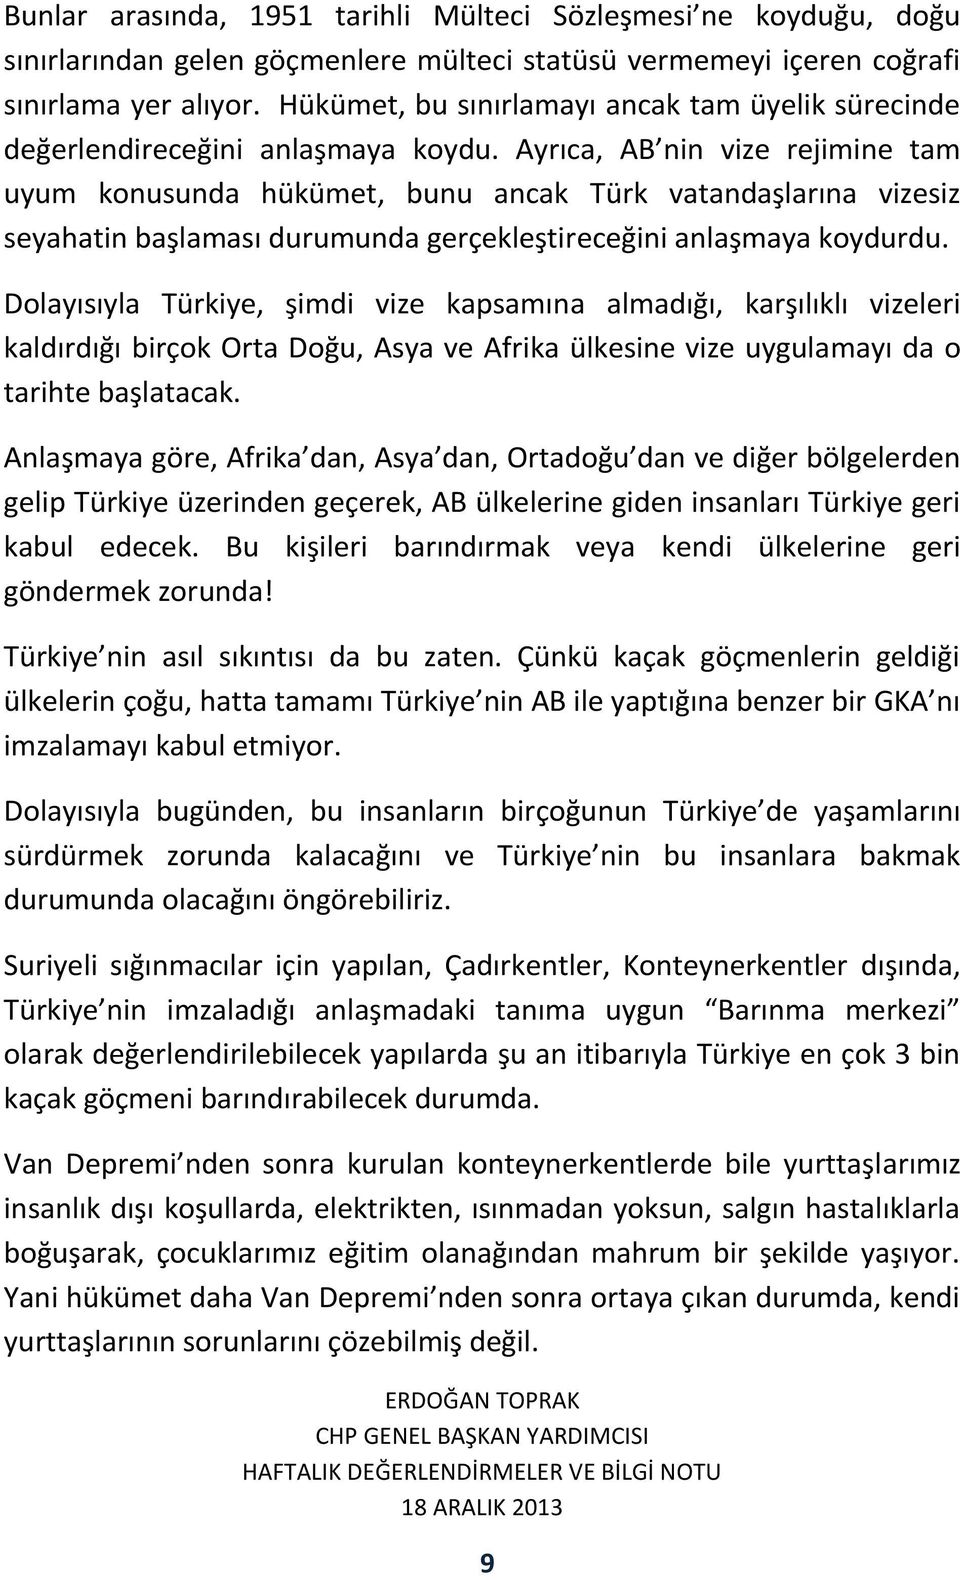 Ayrıca, AB nin vize rejimine tam uyum konusunda hükümet, bunu ancak Türk vatandaşlarına vizesiz seyahatin başlaması durumunda gerçekleştireceğini anlaşmaya koydurdu.